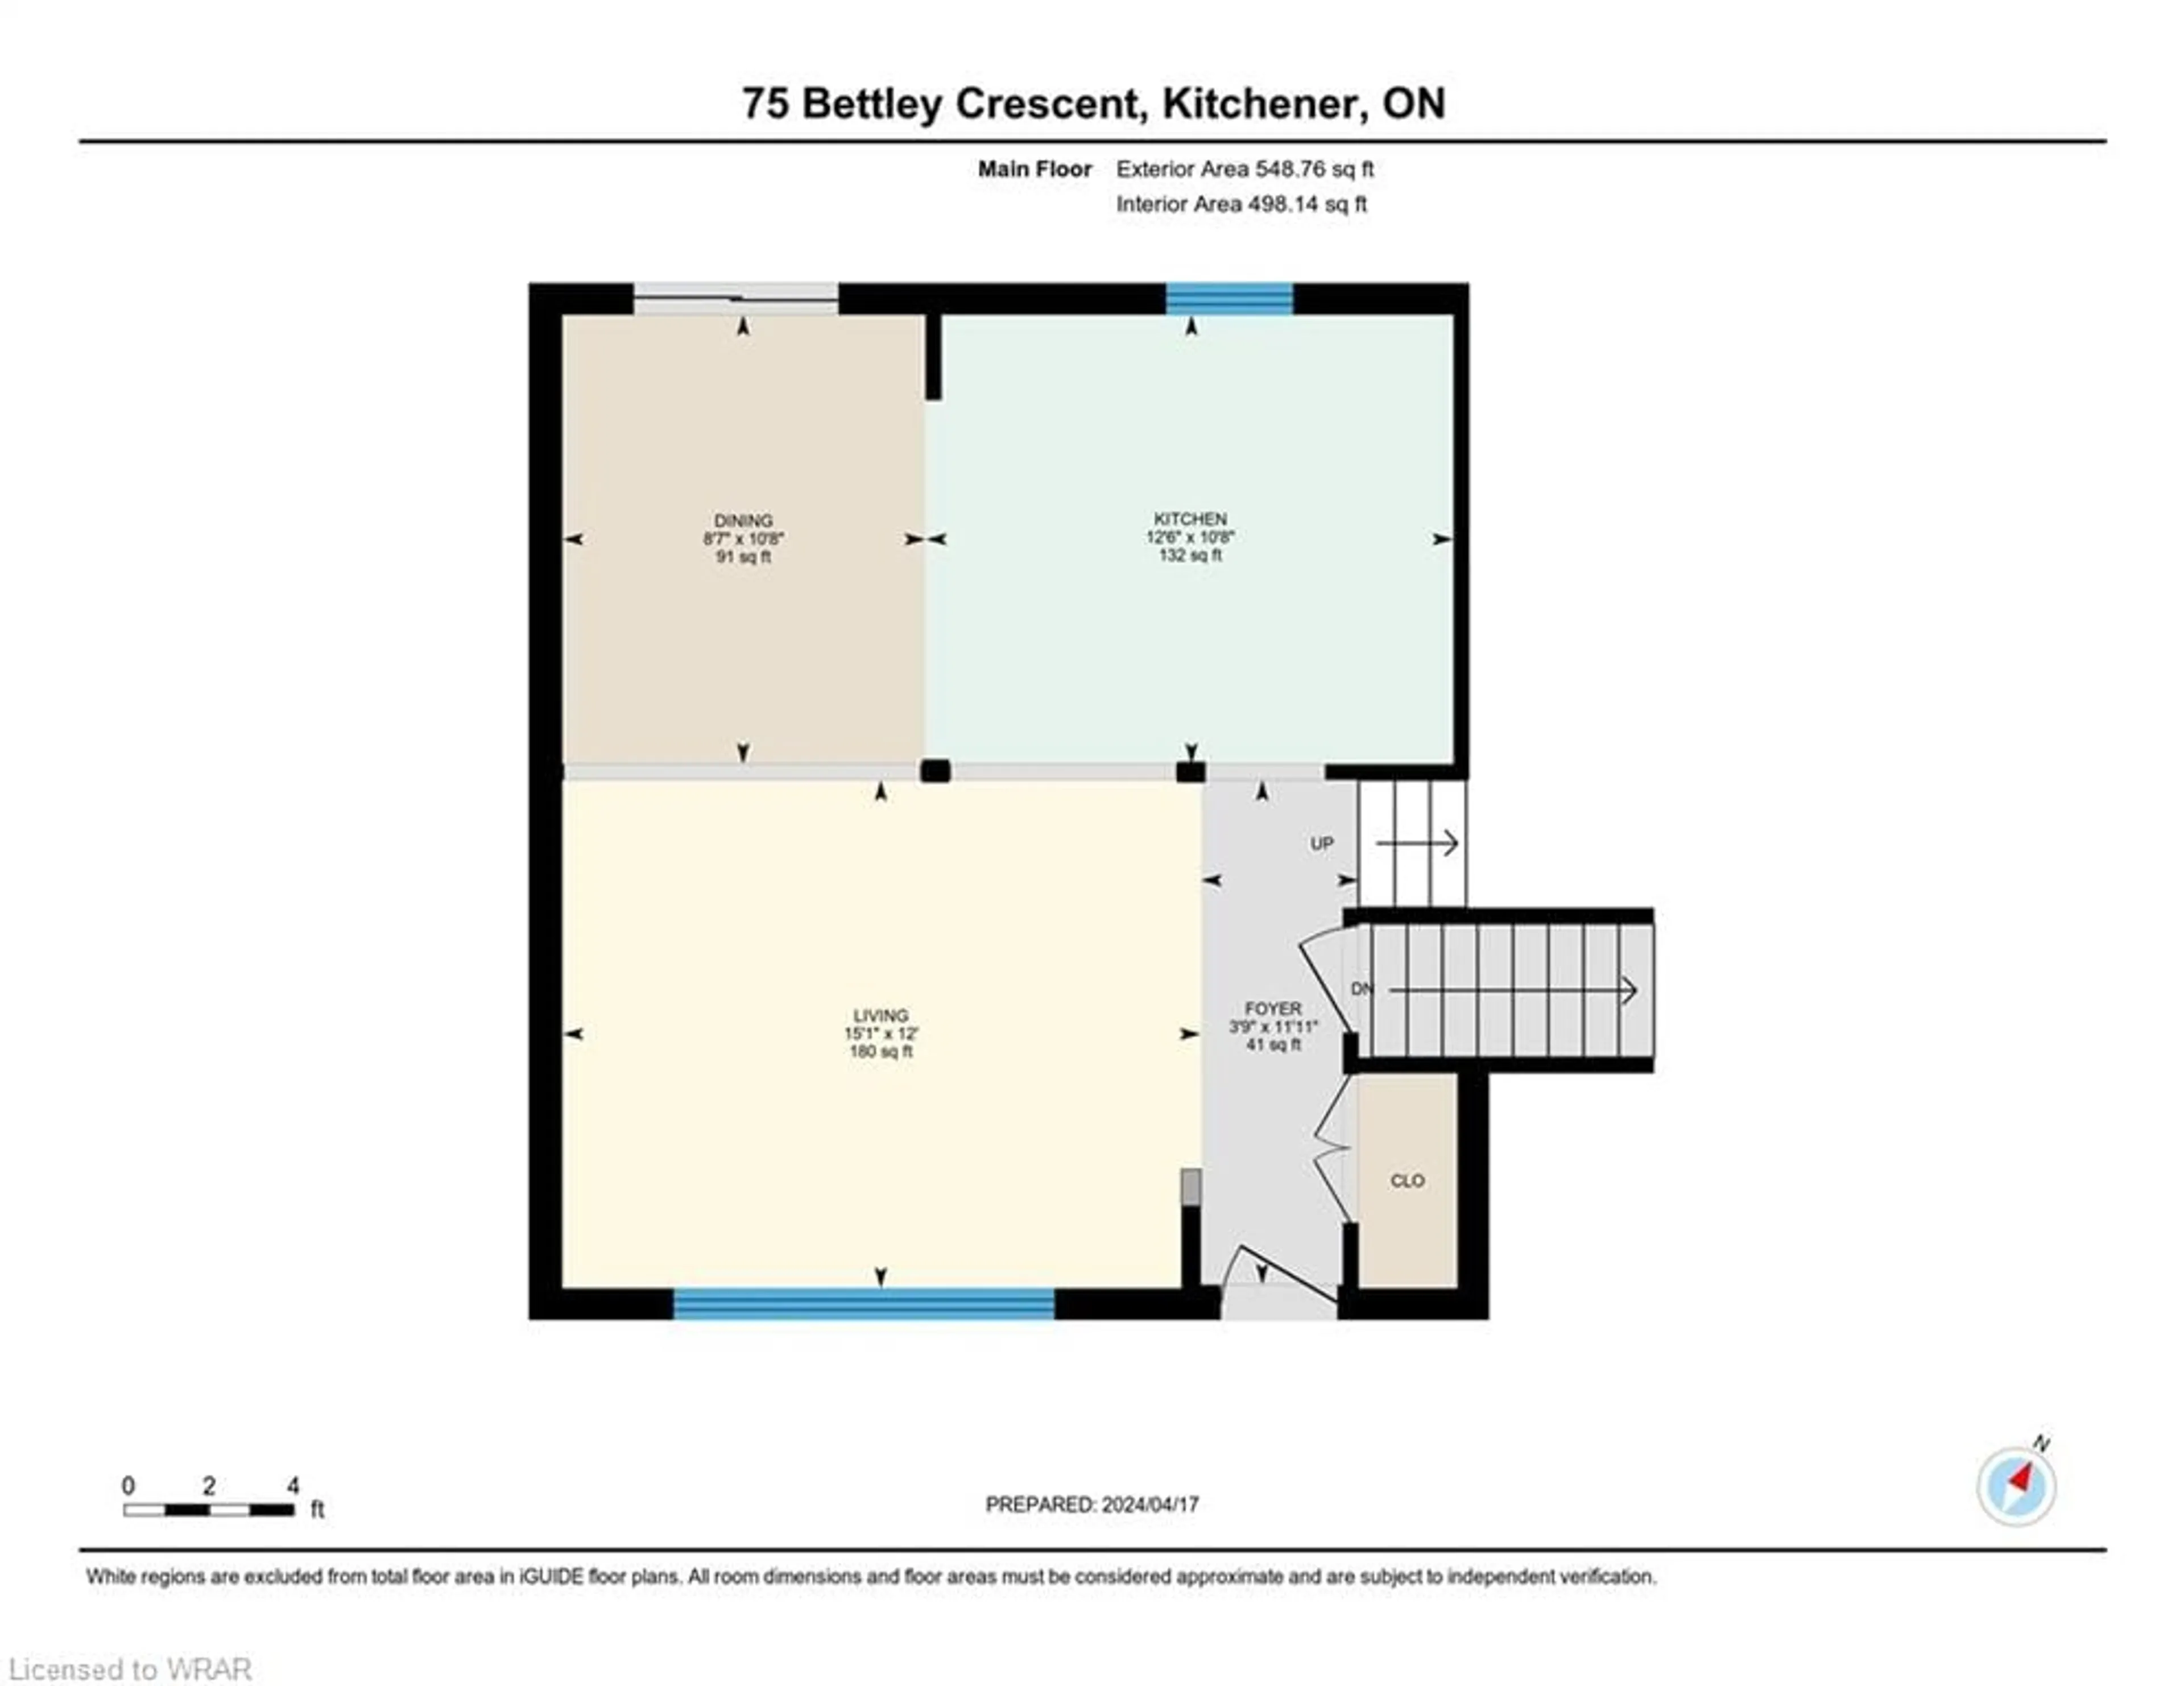 Floor plan for 75 Bettley Cres, Kitchener Ontario N2B 2N7